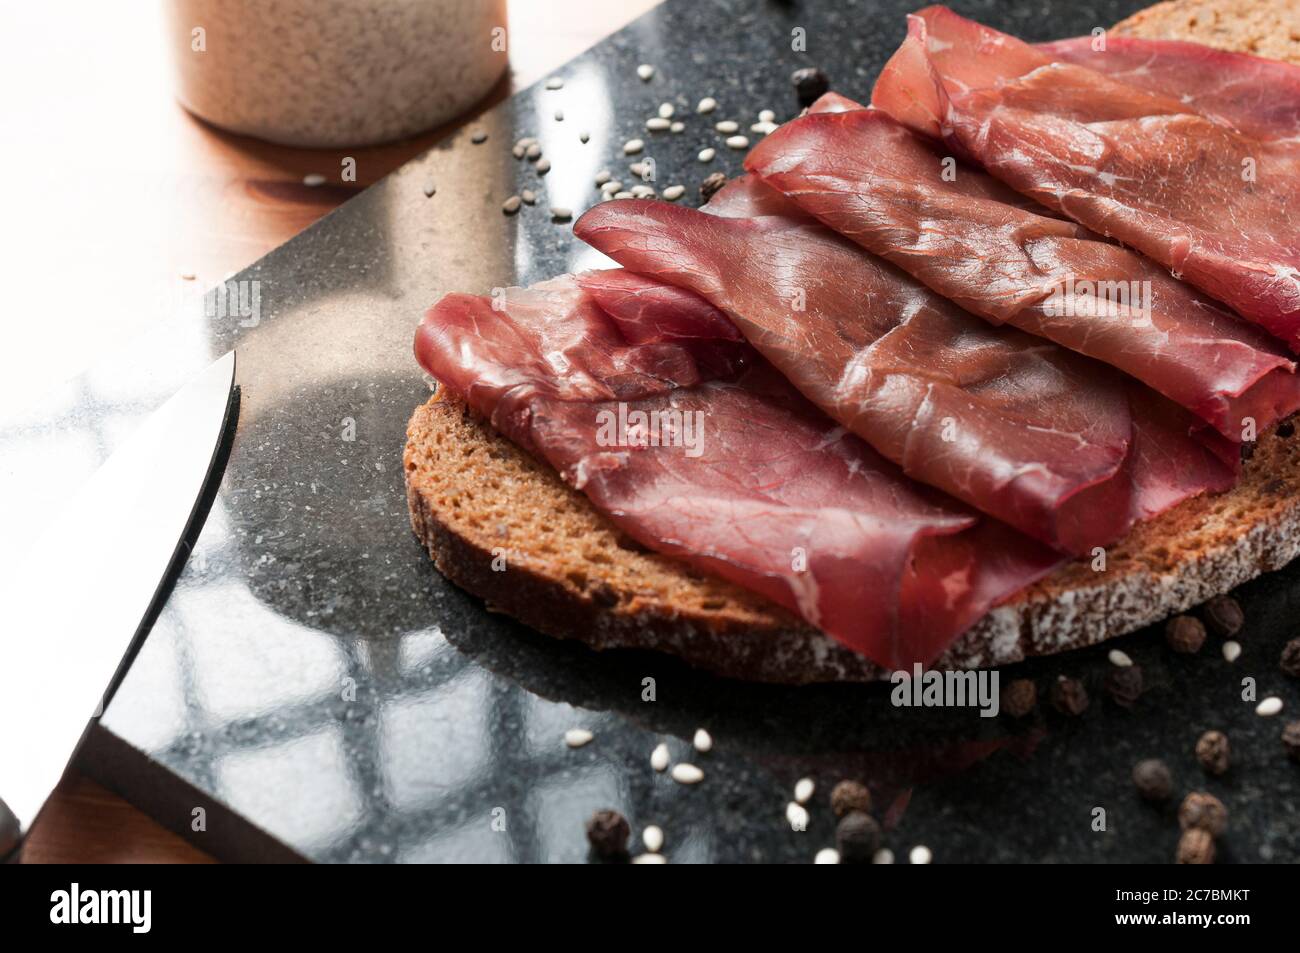 Tranche de pain complet avec bresaola (bœuf séché) sur une planche à découper en granit noir. Bresaola est un salami italien célèbre avec une teneur réduite en matières grasses Banque D'Images